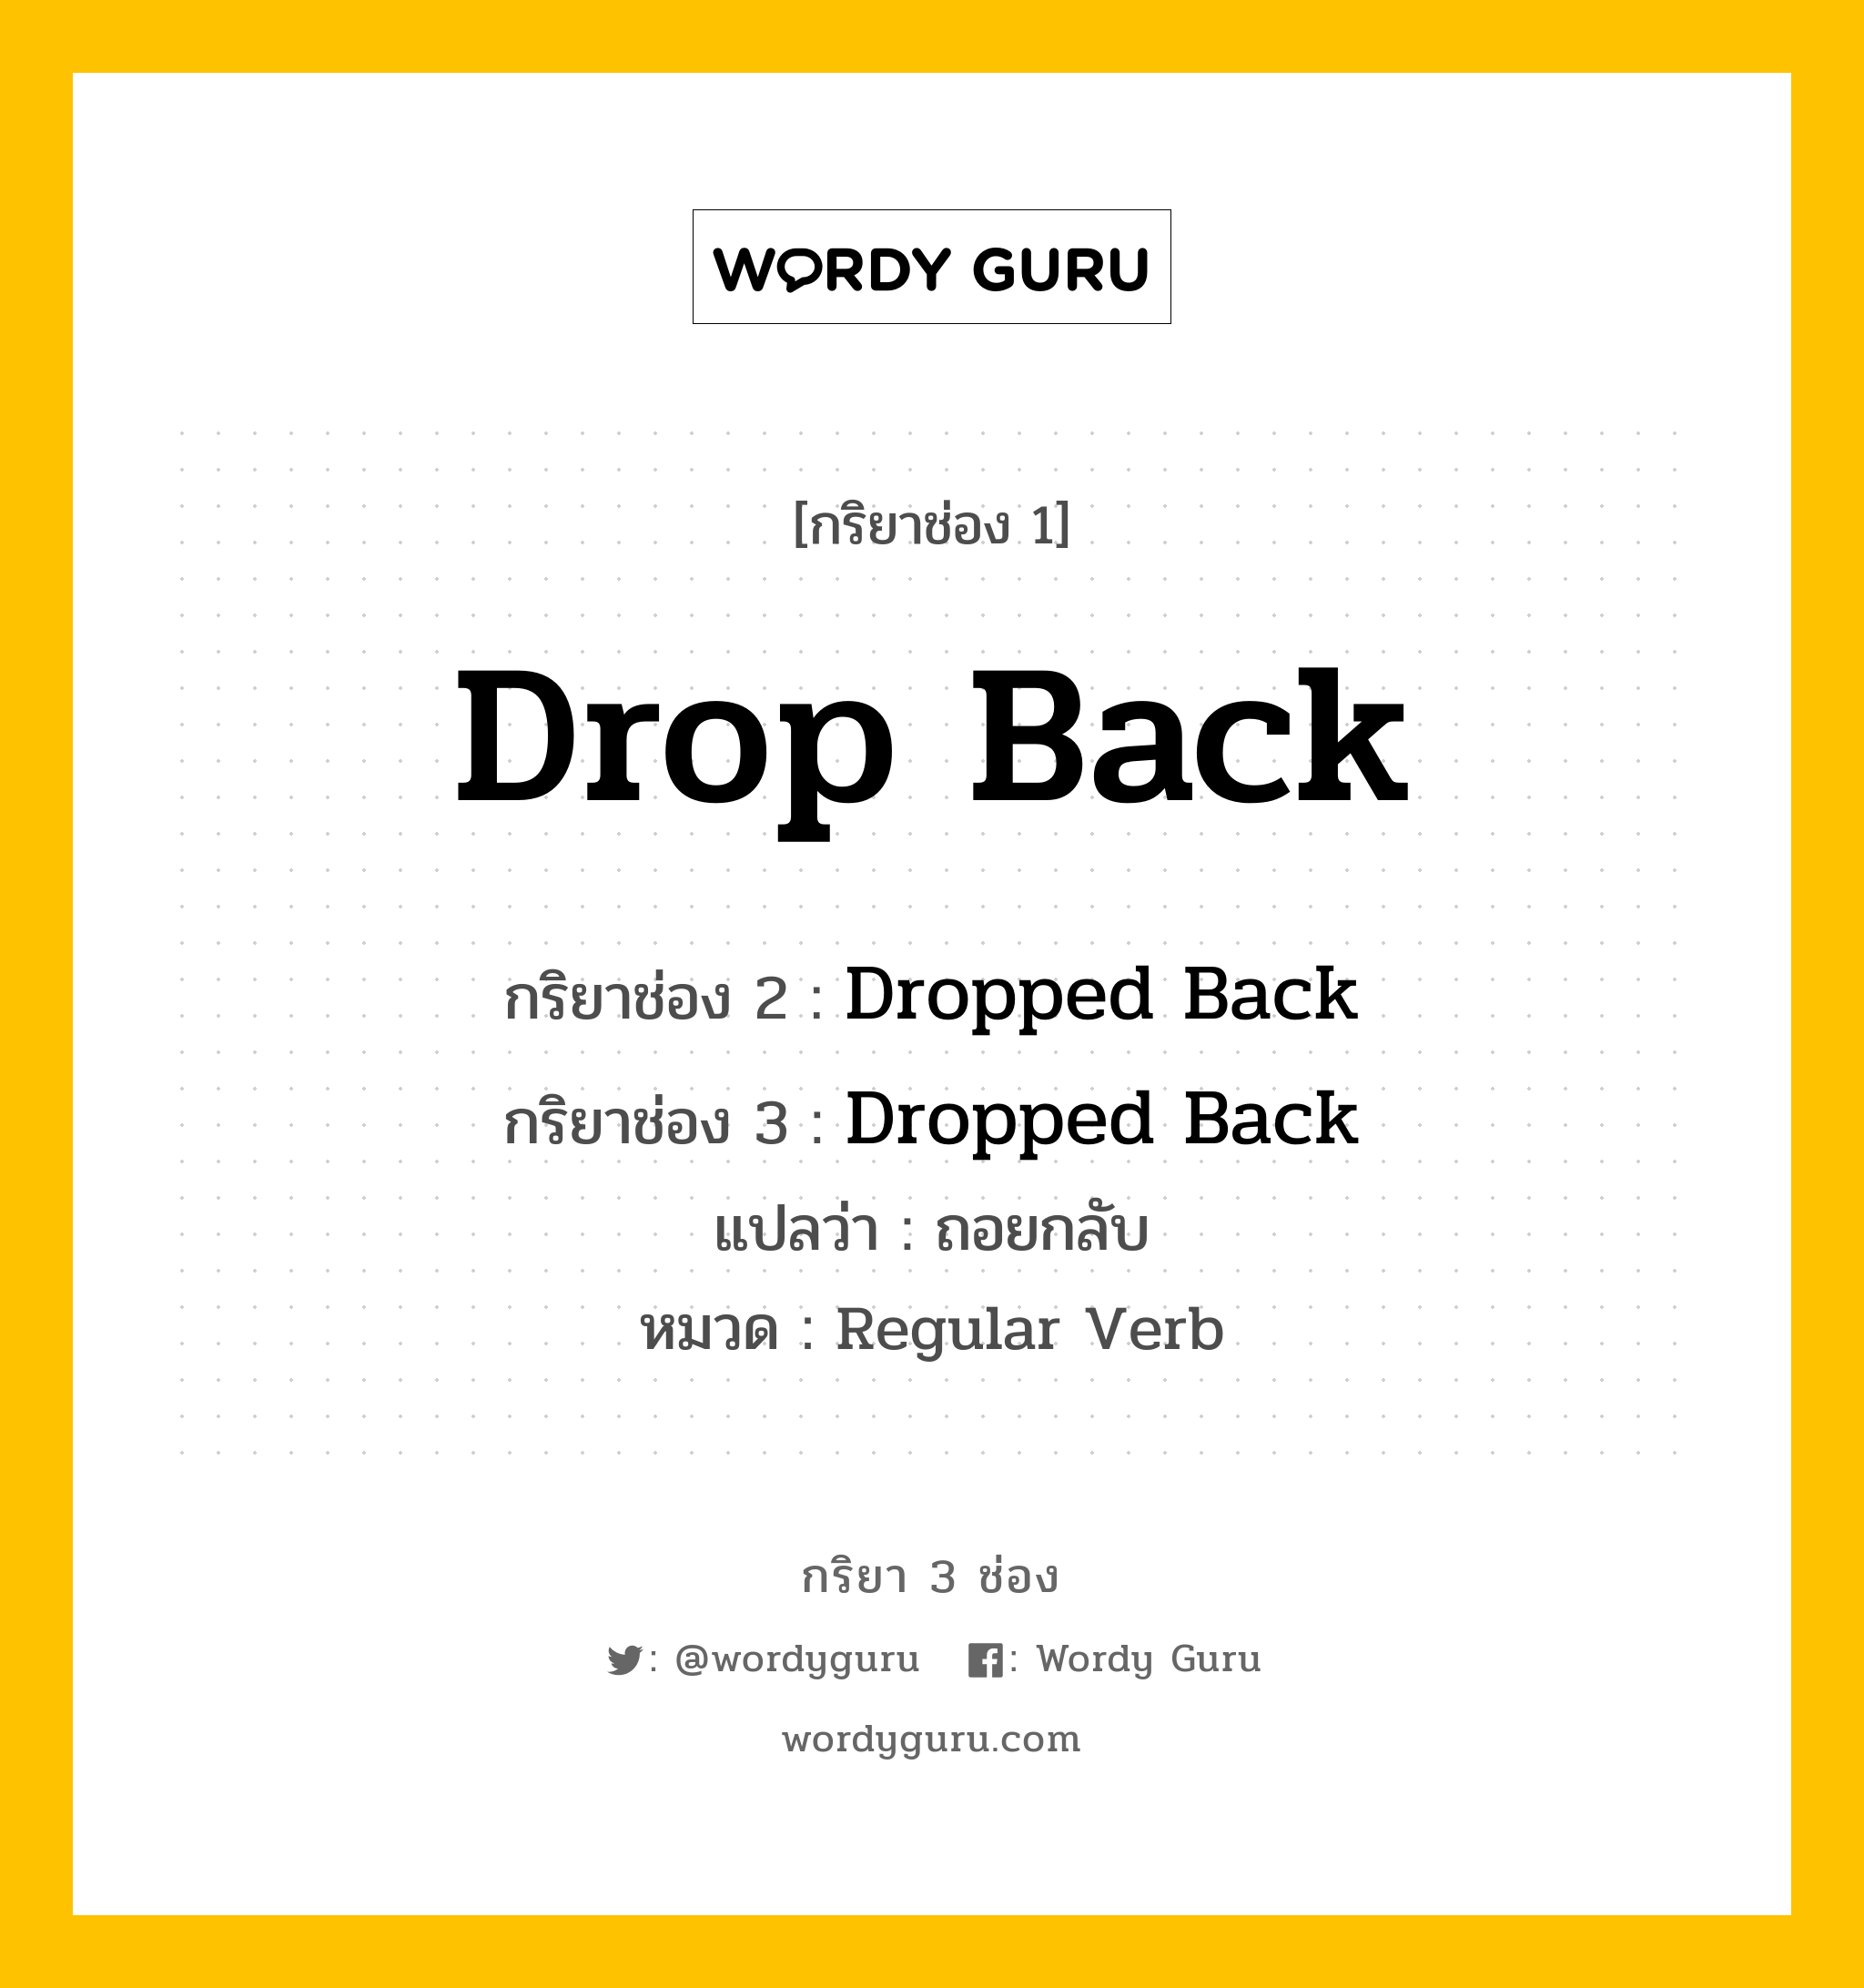 กริยา 3 ช่อง ของ Drop Back คืออะไร?, กริยาช่อง 1 Drop Back กริยาช่อง 2 Dropped Back กริยาช่อง 3 Dropped Back แปลว่า ถอยกลับ หมวด Regular Verb หมวด Regular Verb